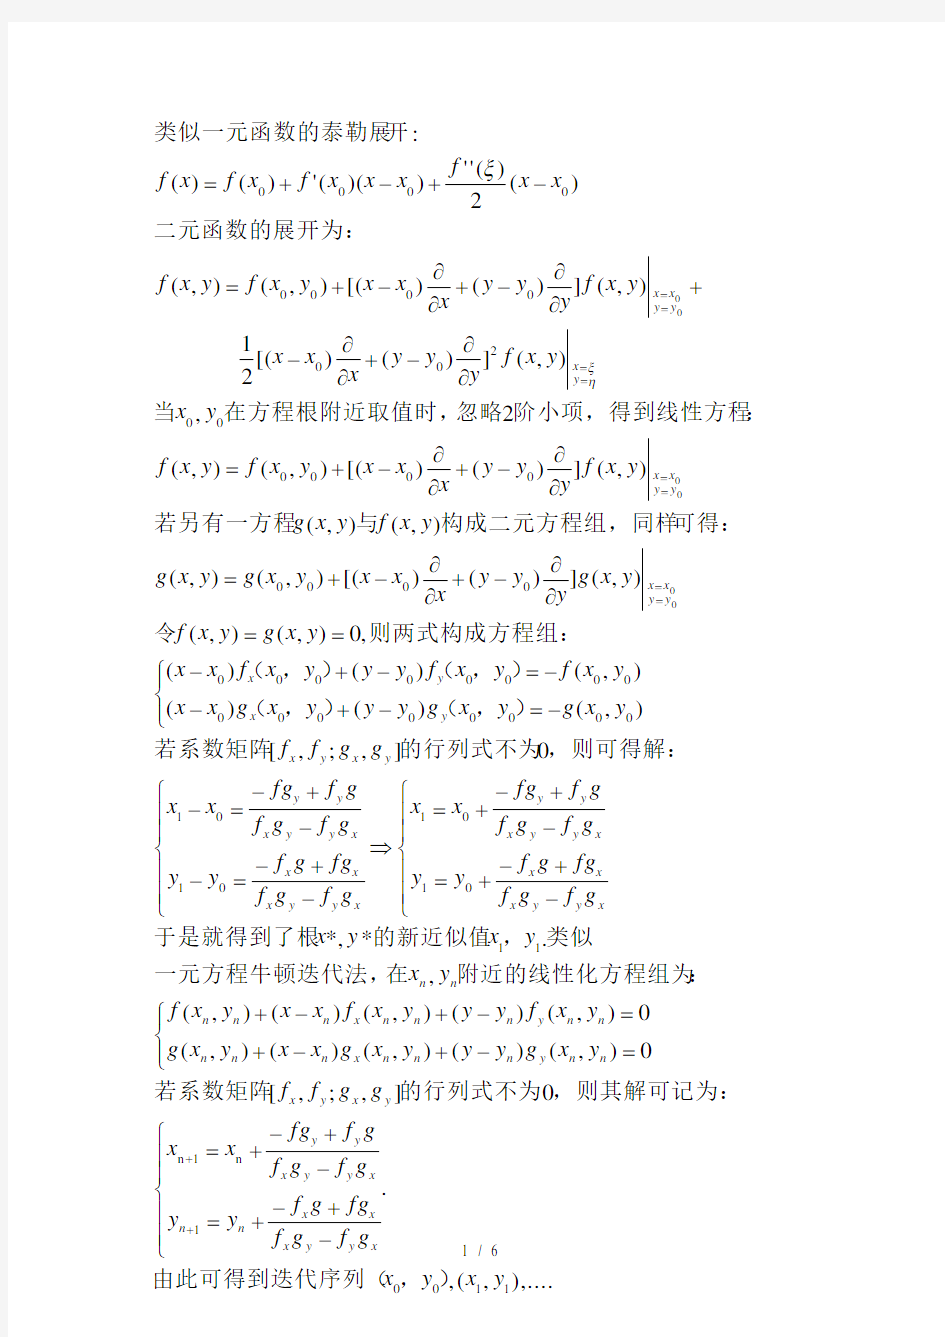 牛顿迭代法解元方程组以及误差分析matlab实现